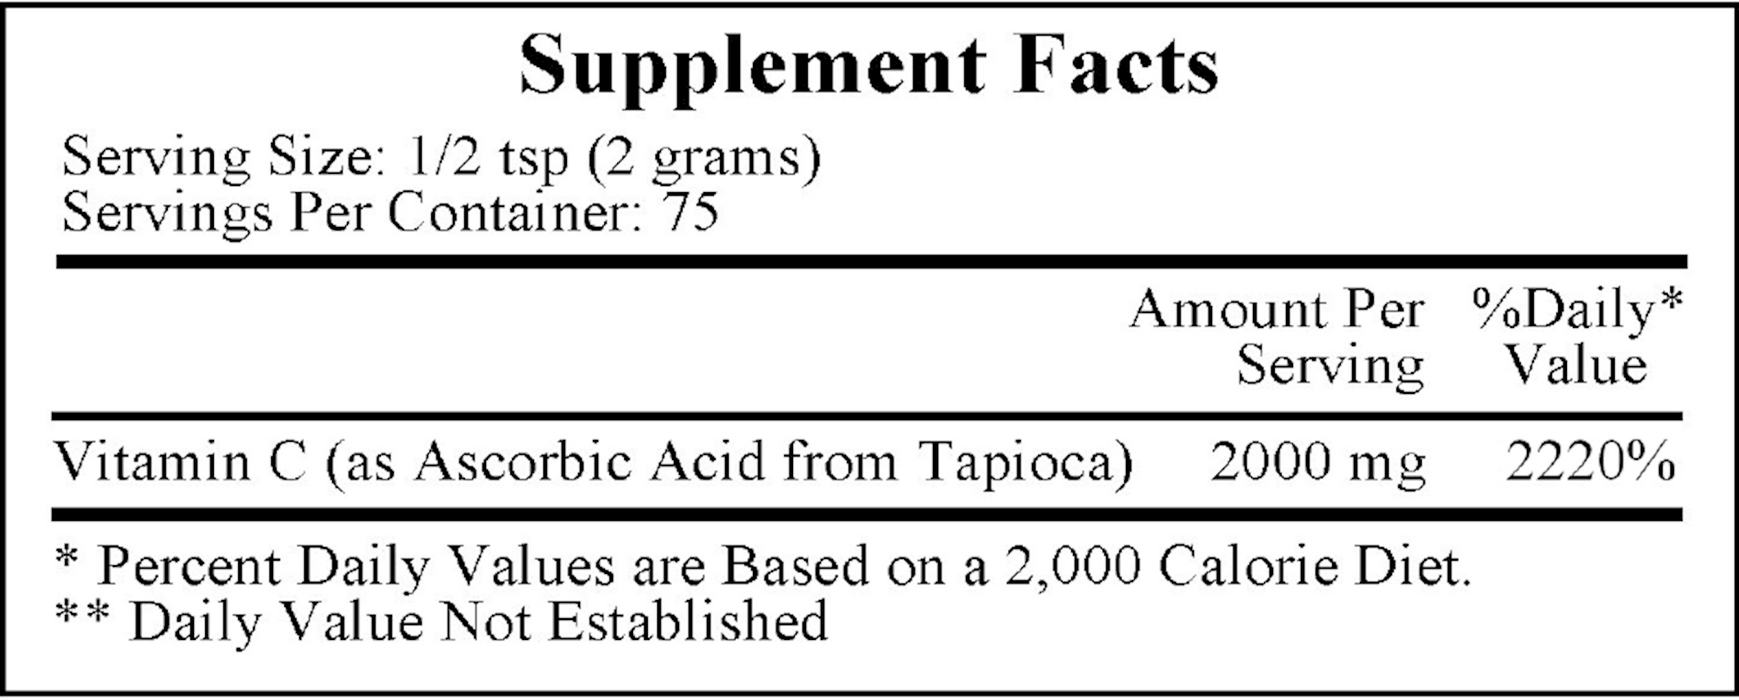 Vitamin C from Tapioca